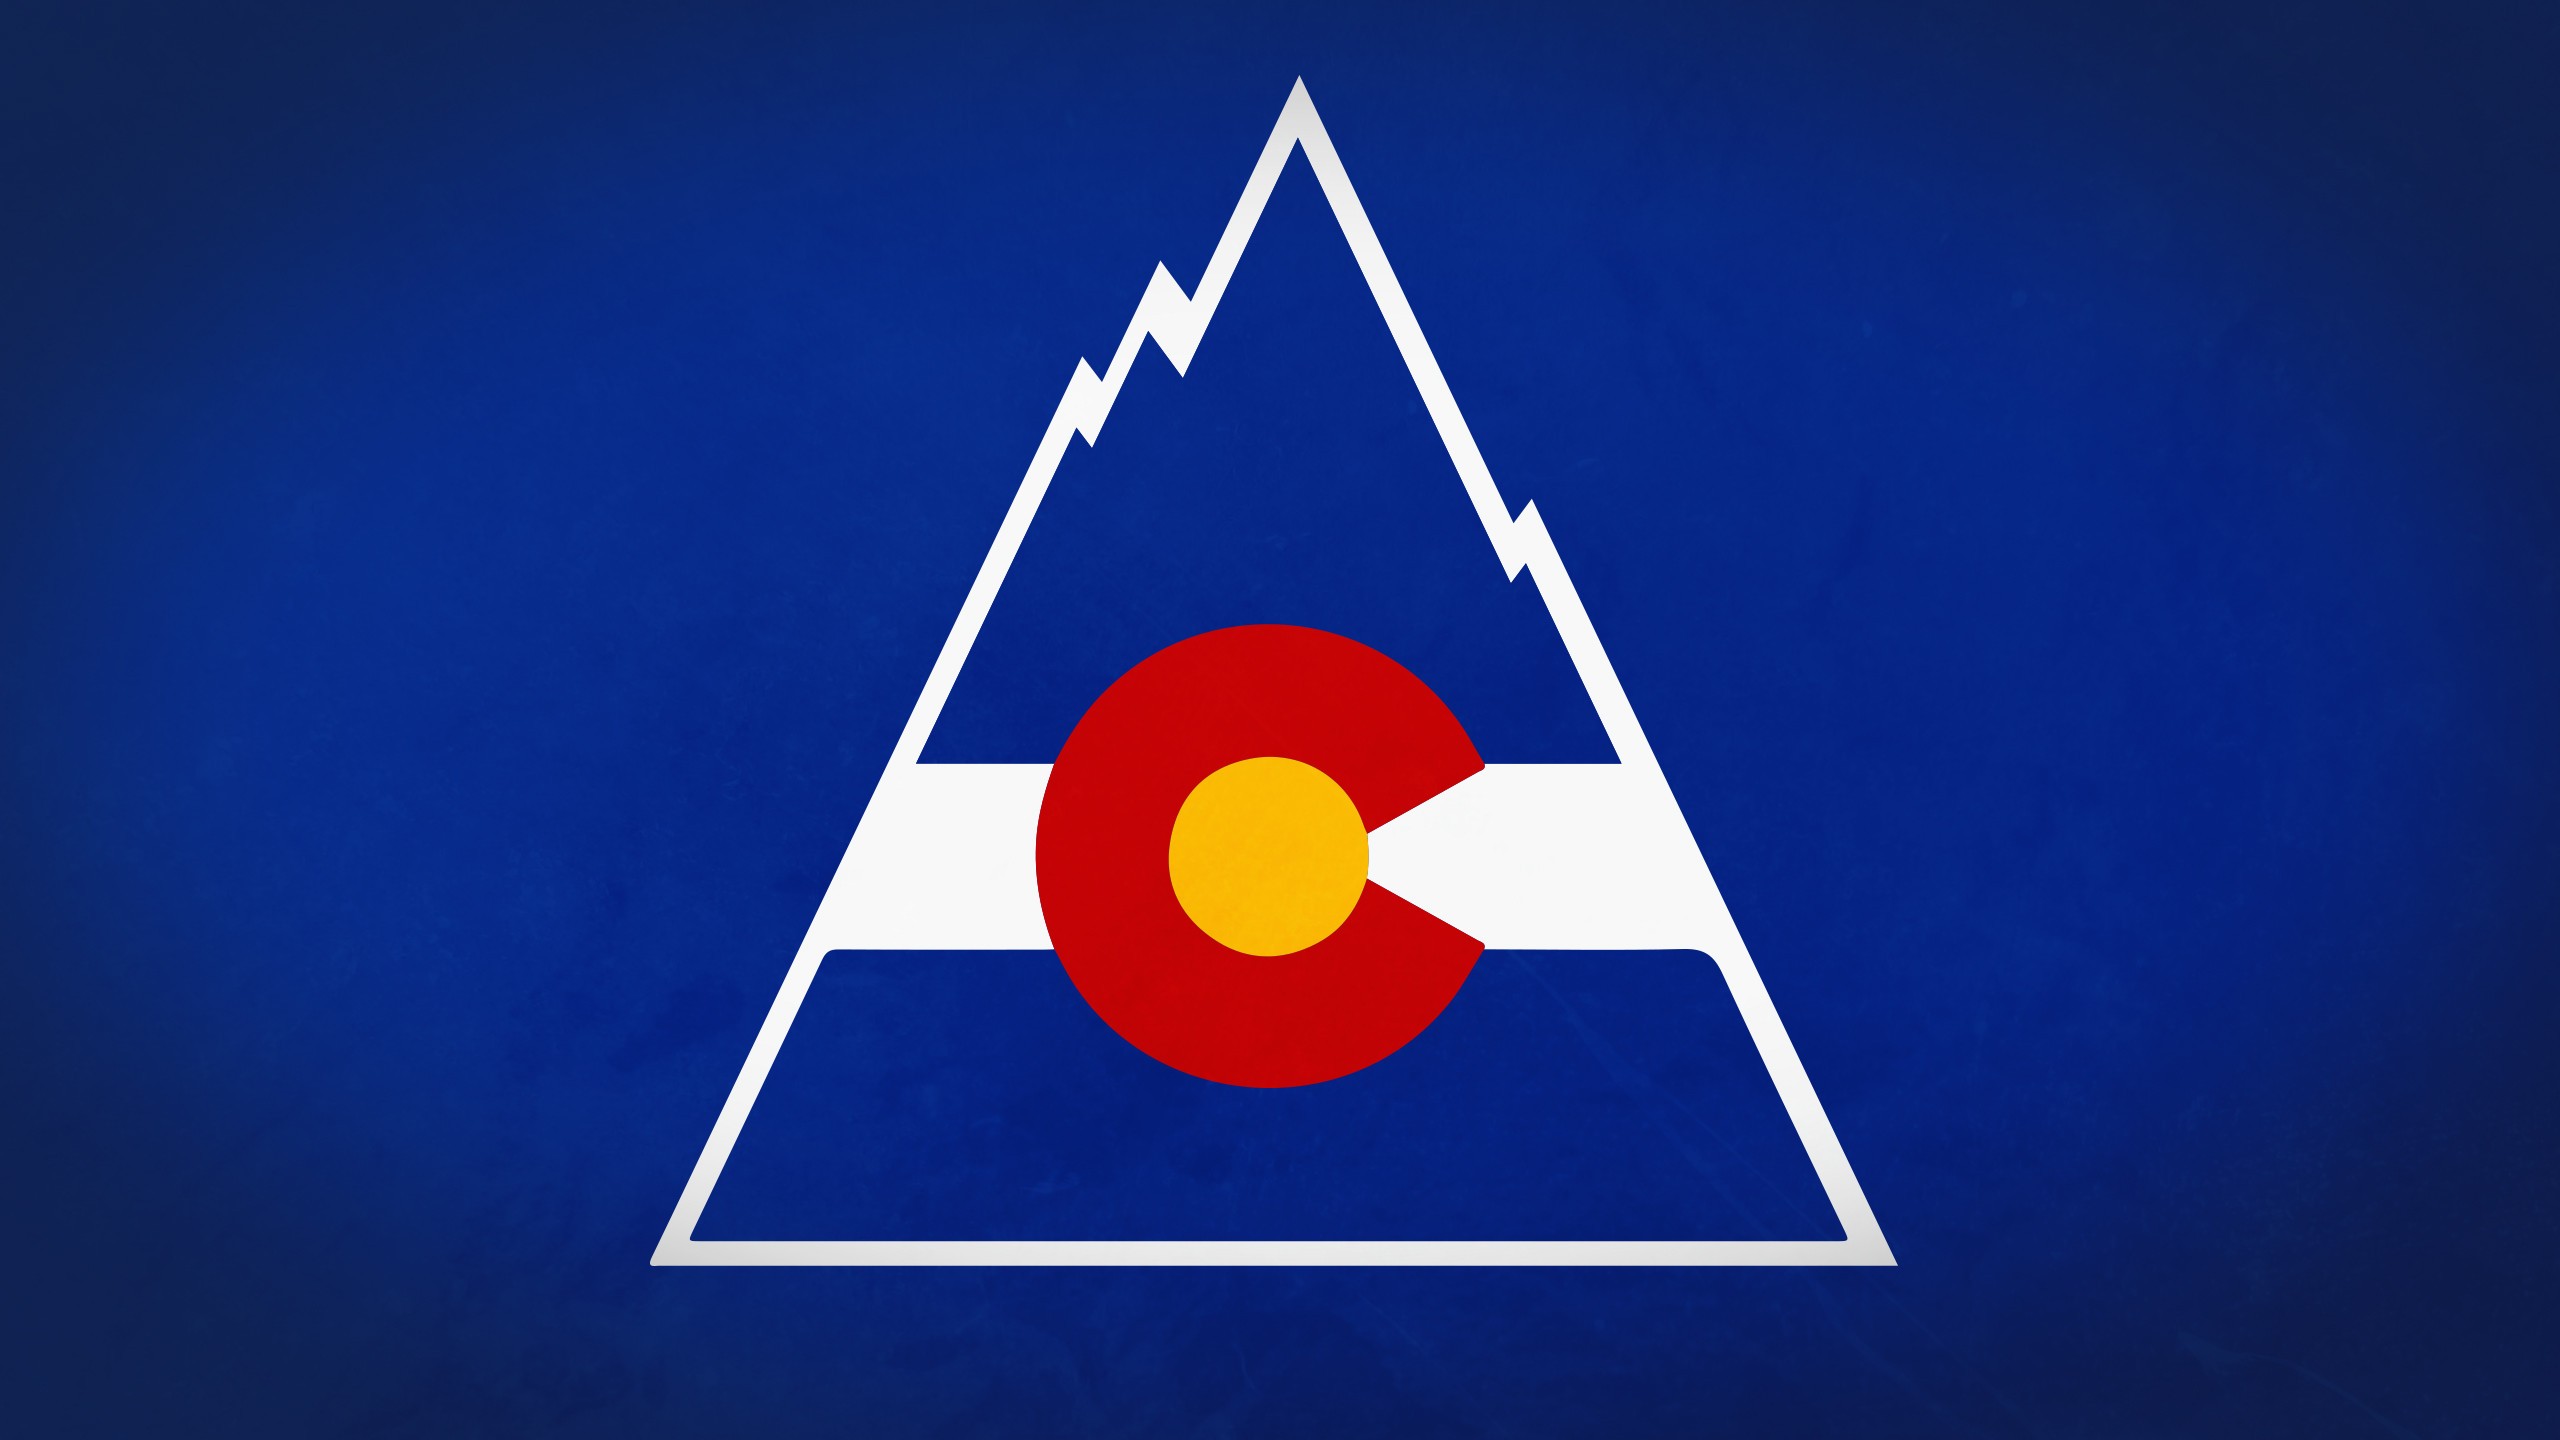 Скачать обои Скалистые Горы Колорадо на телефон бесплатно